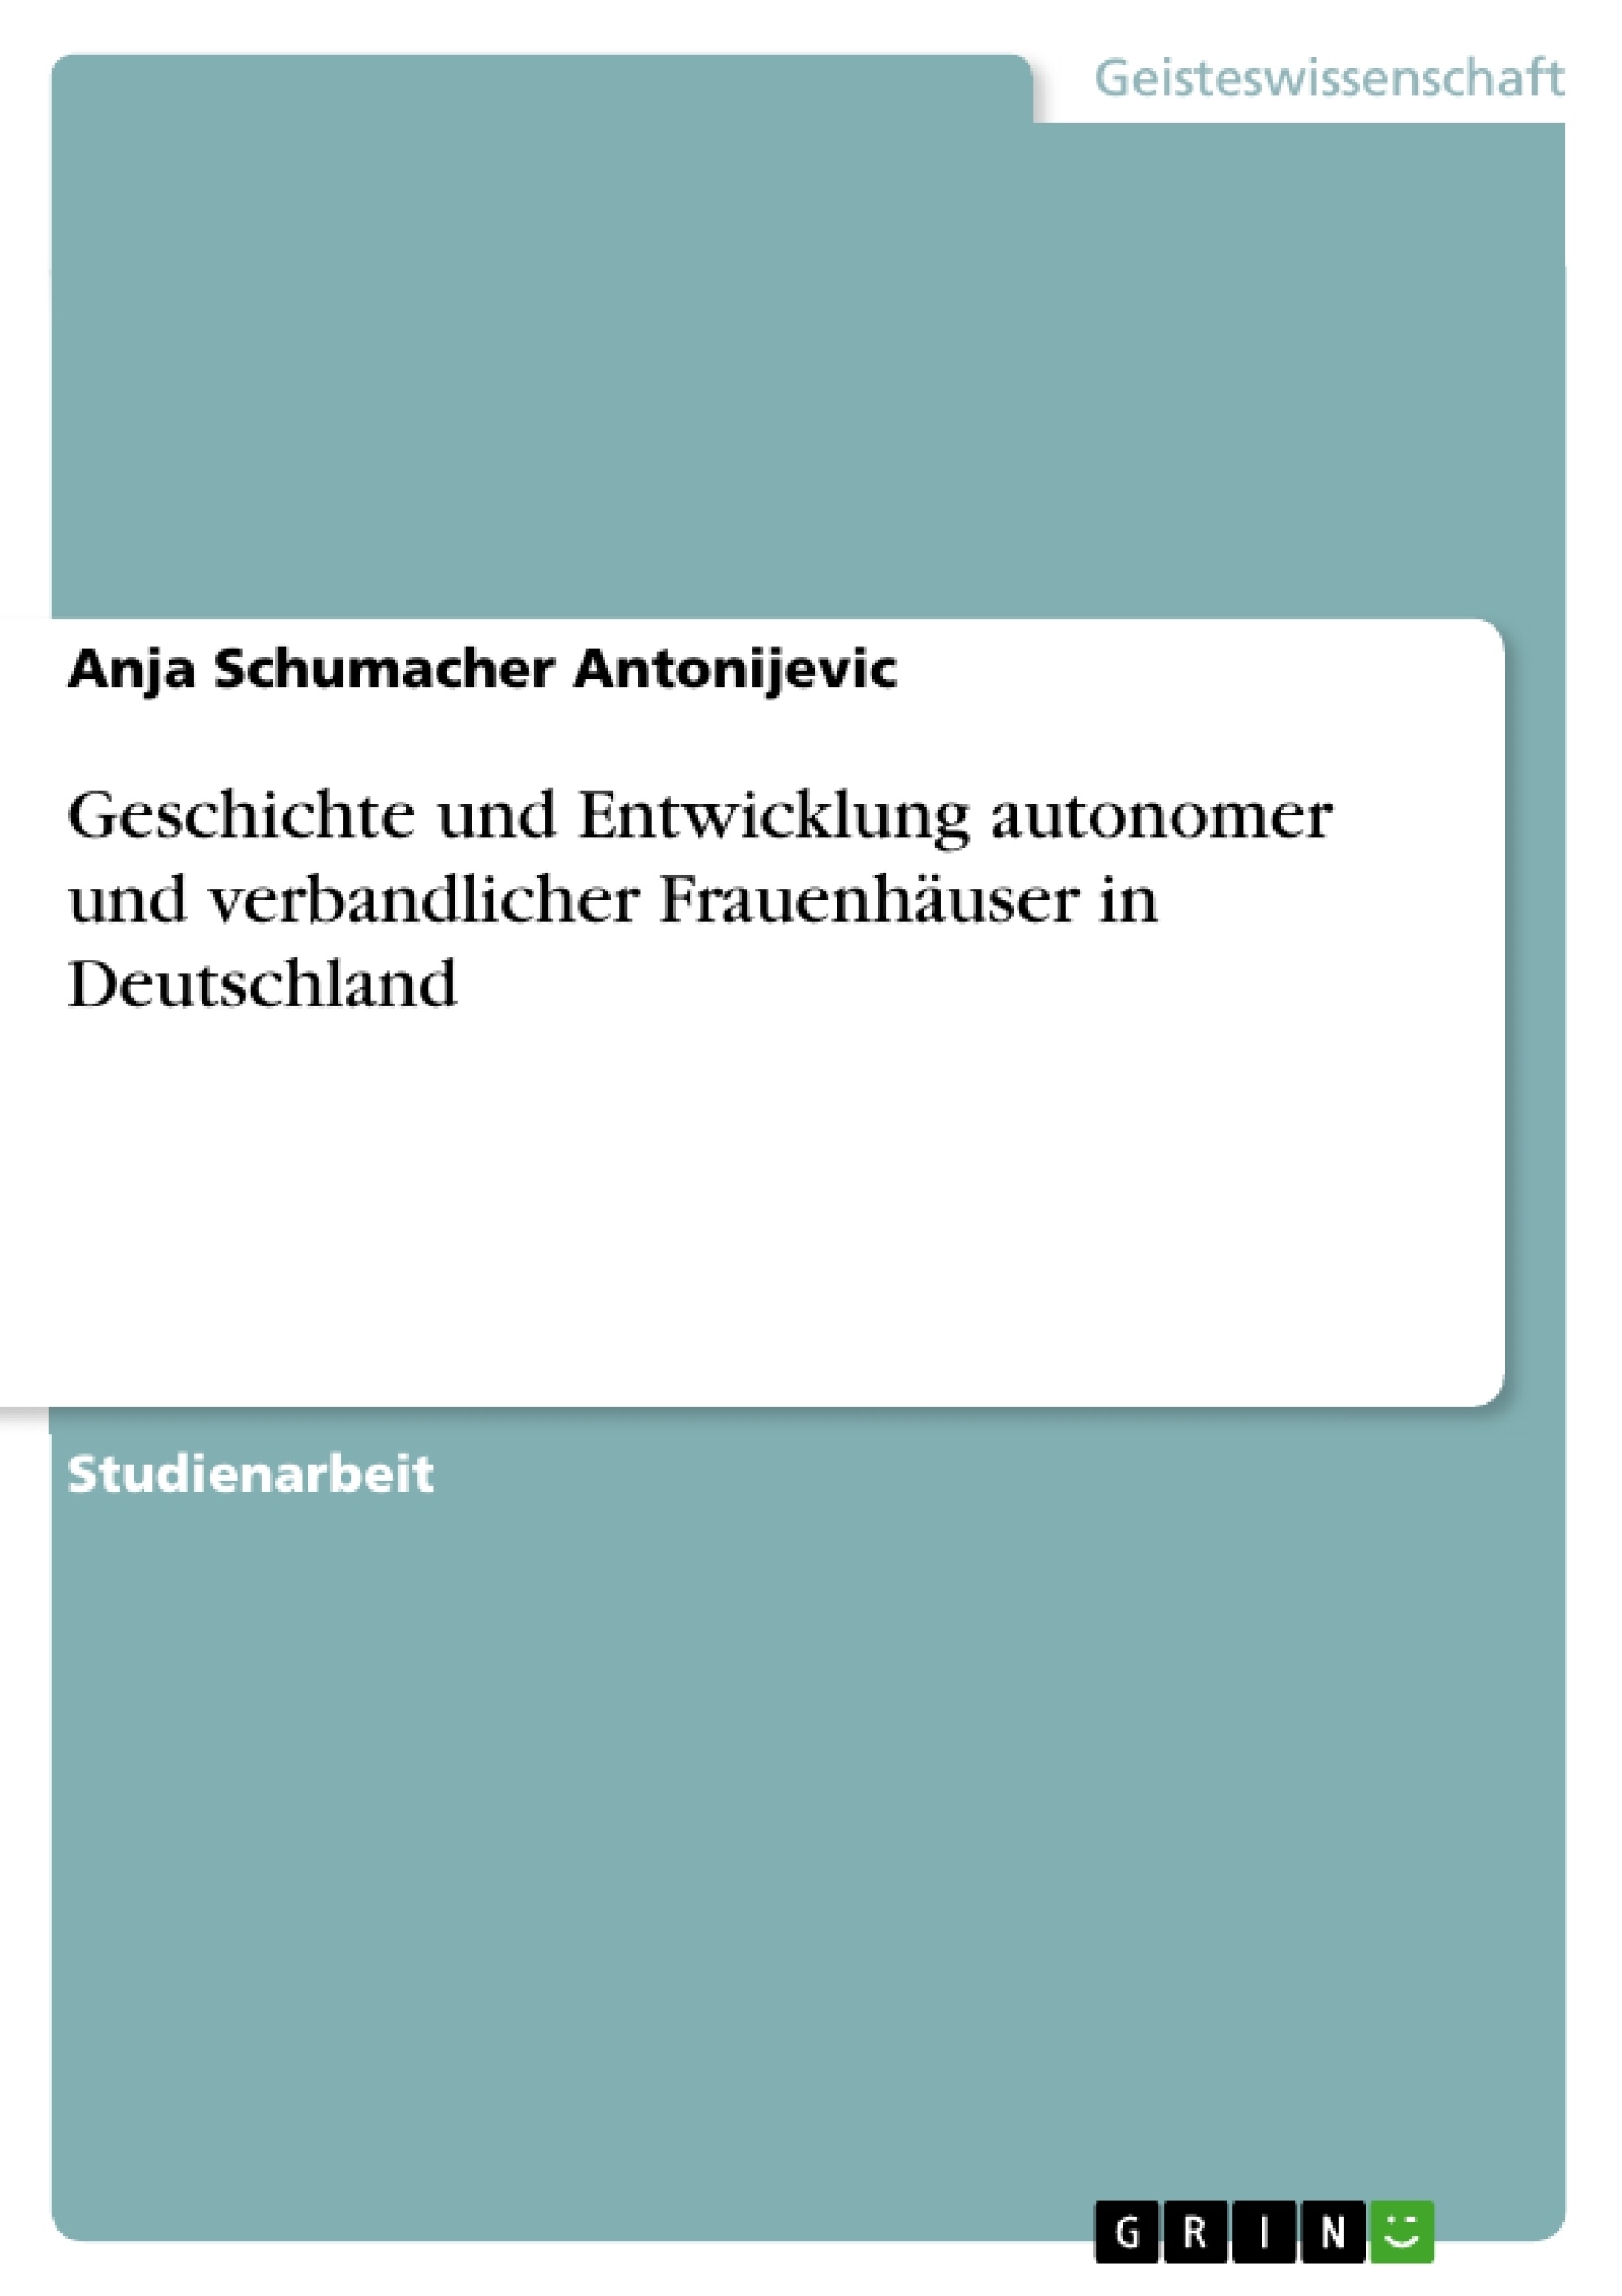 Título: Geschichte und Entwicklung autonomer und verbandlicher Frauenhäuser in Deutschland